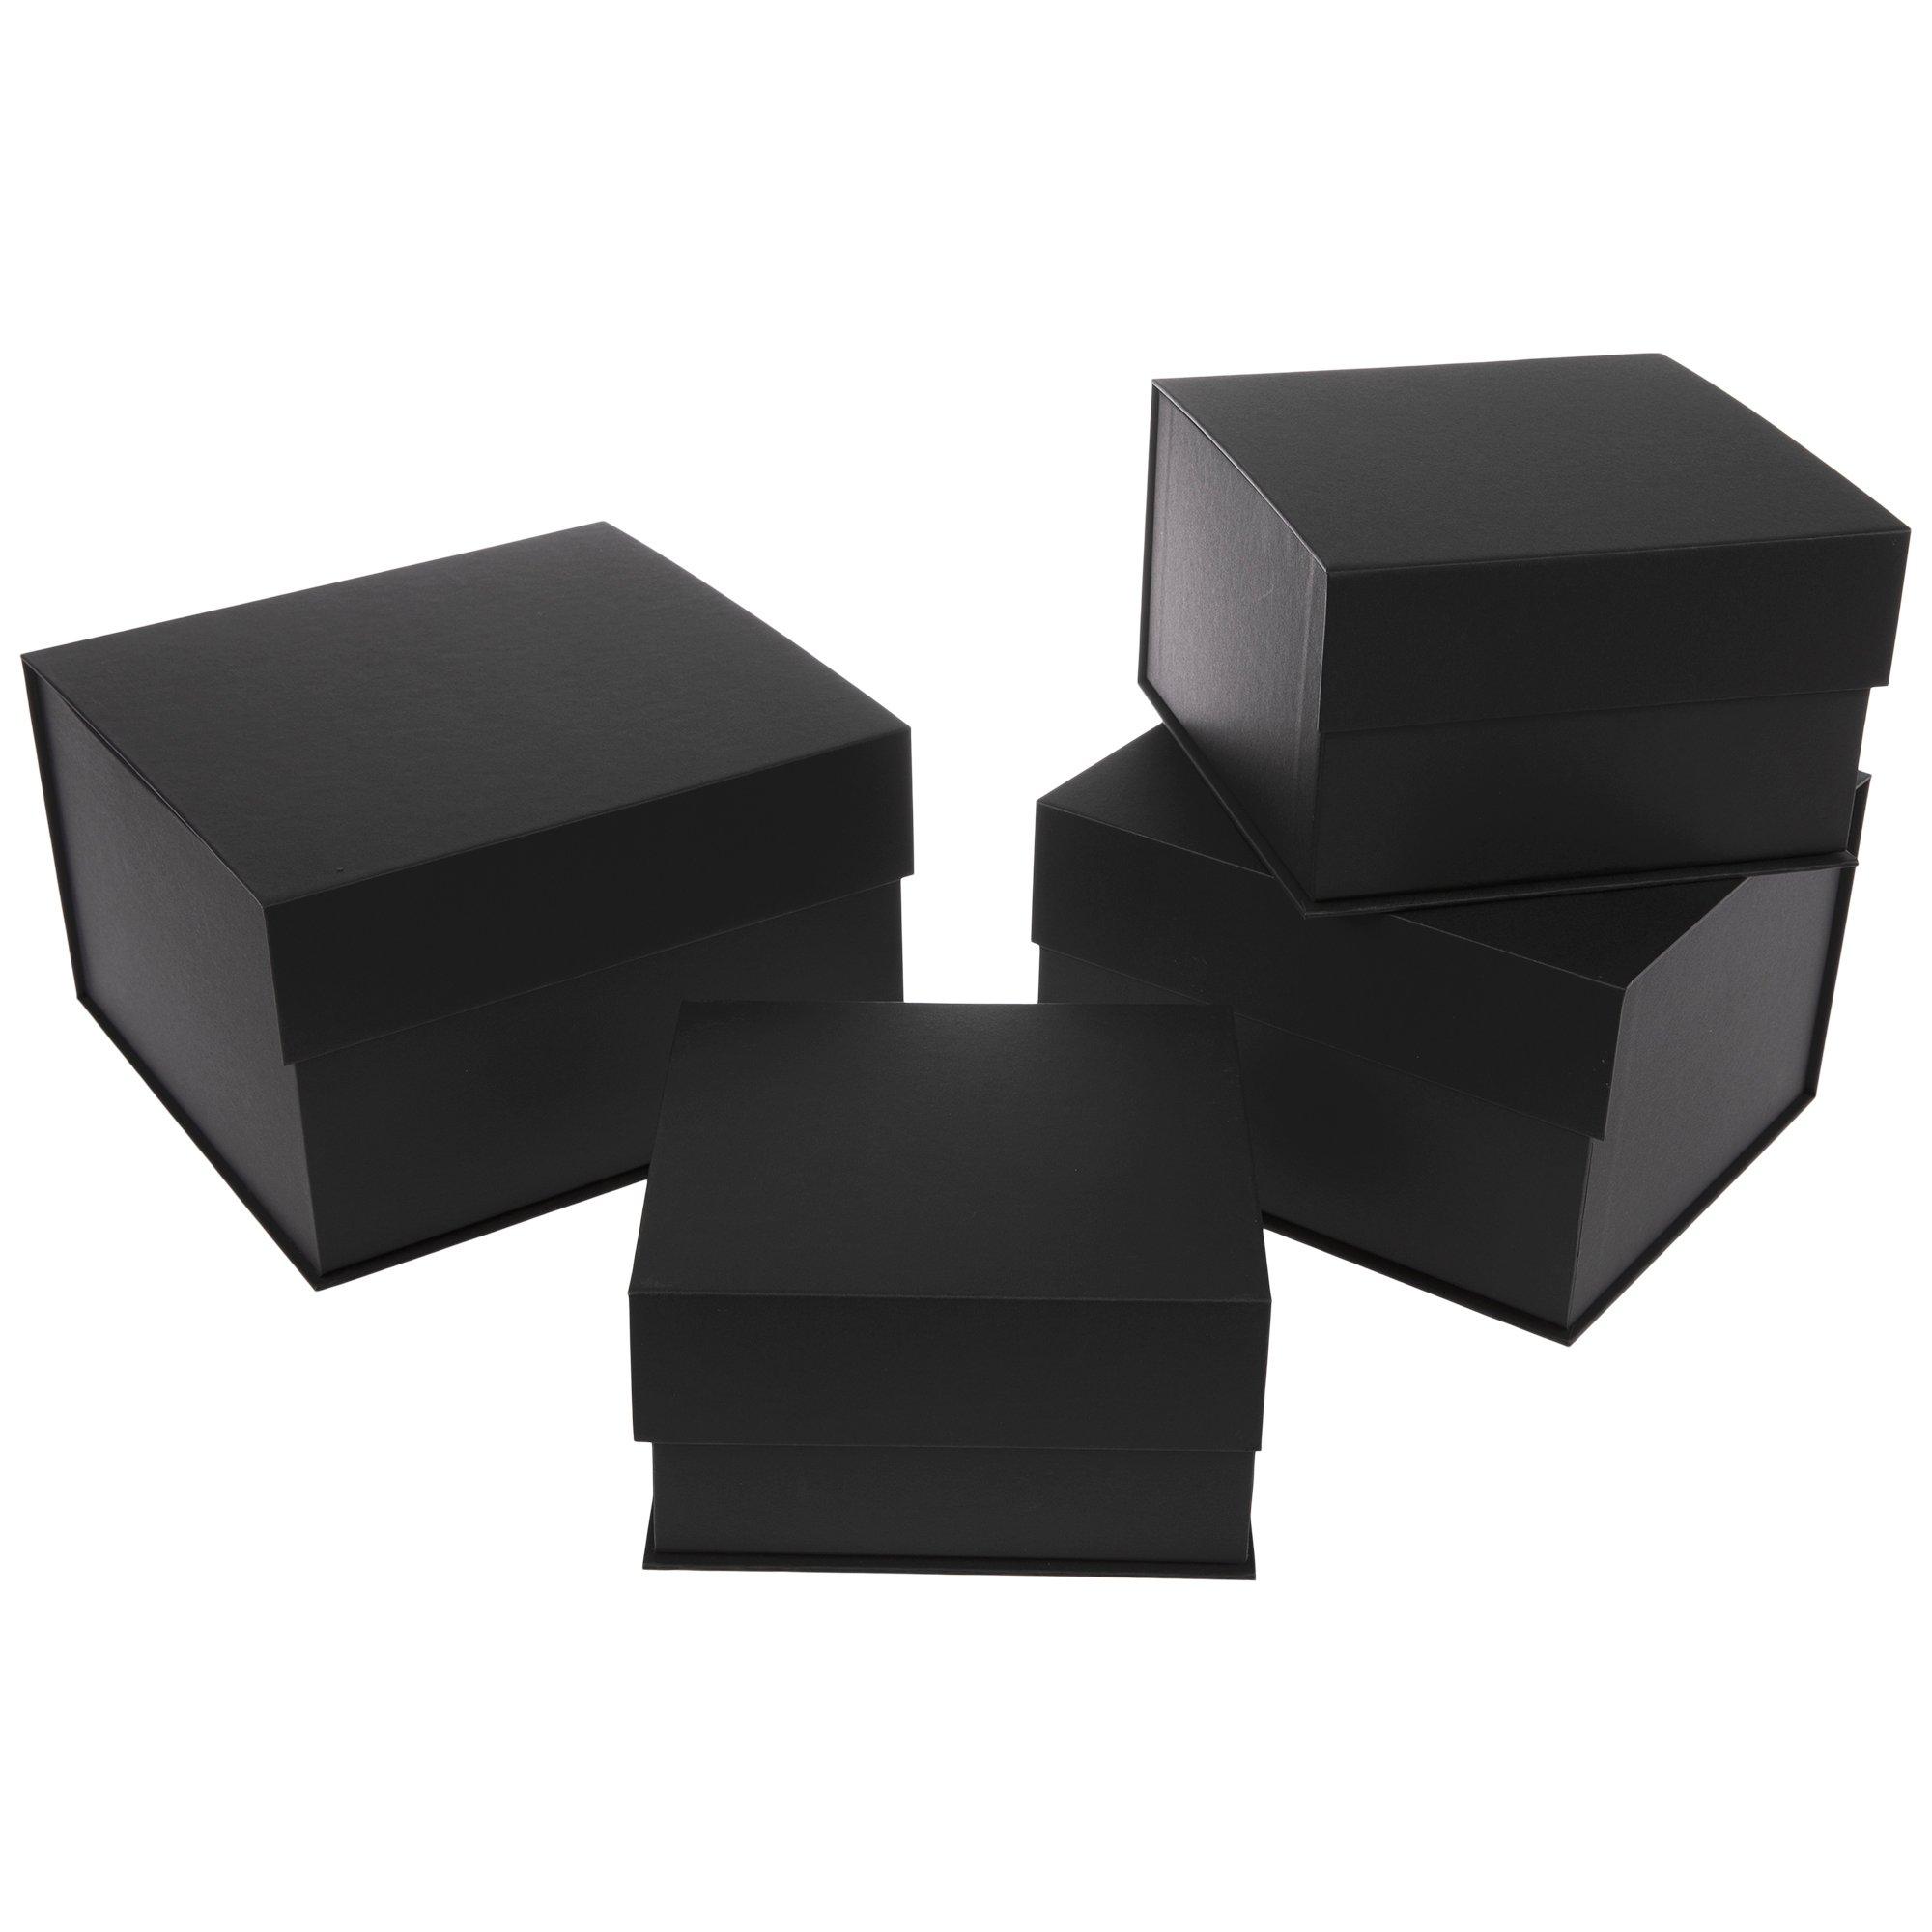 Matte black paper mache box for book